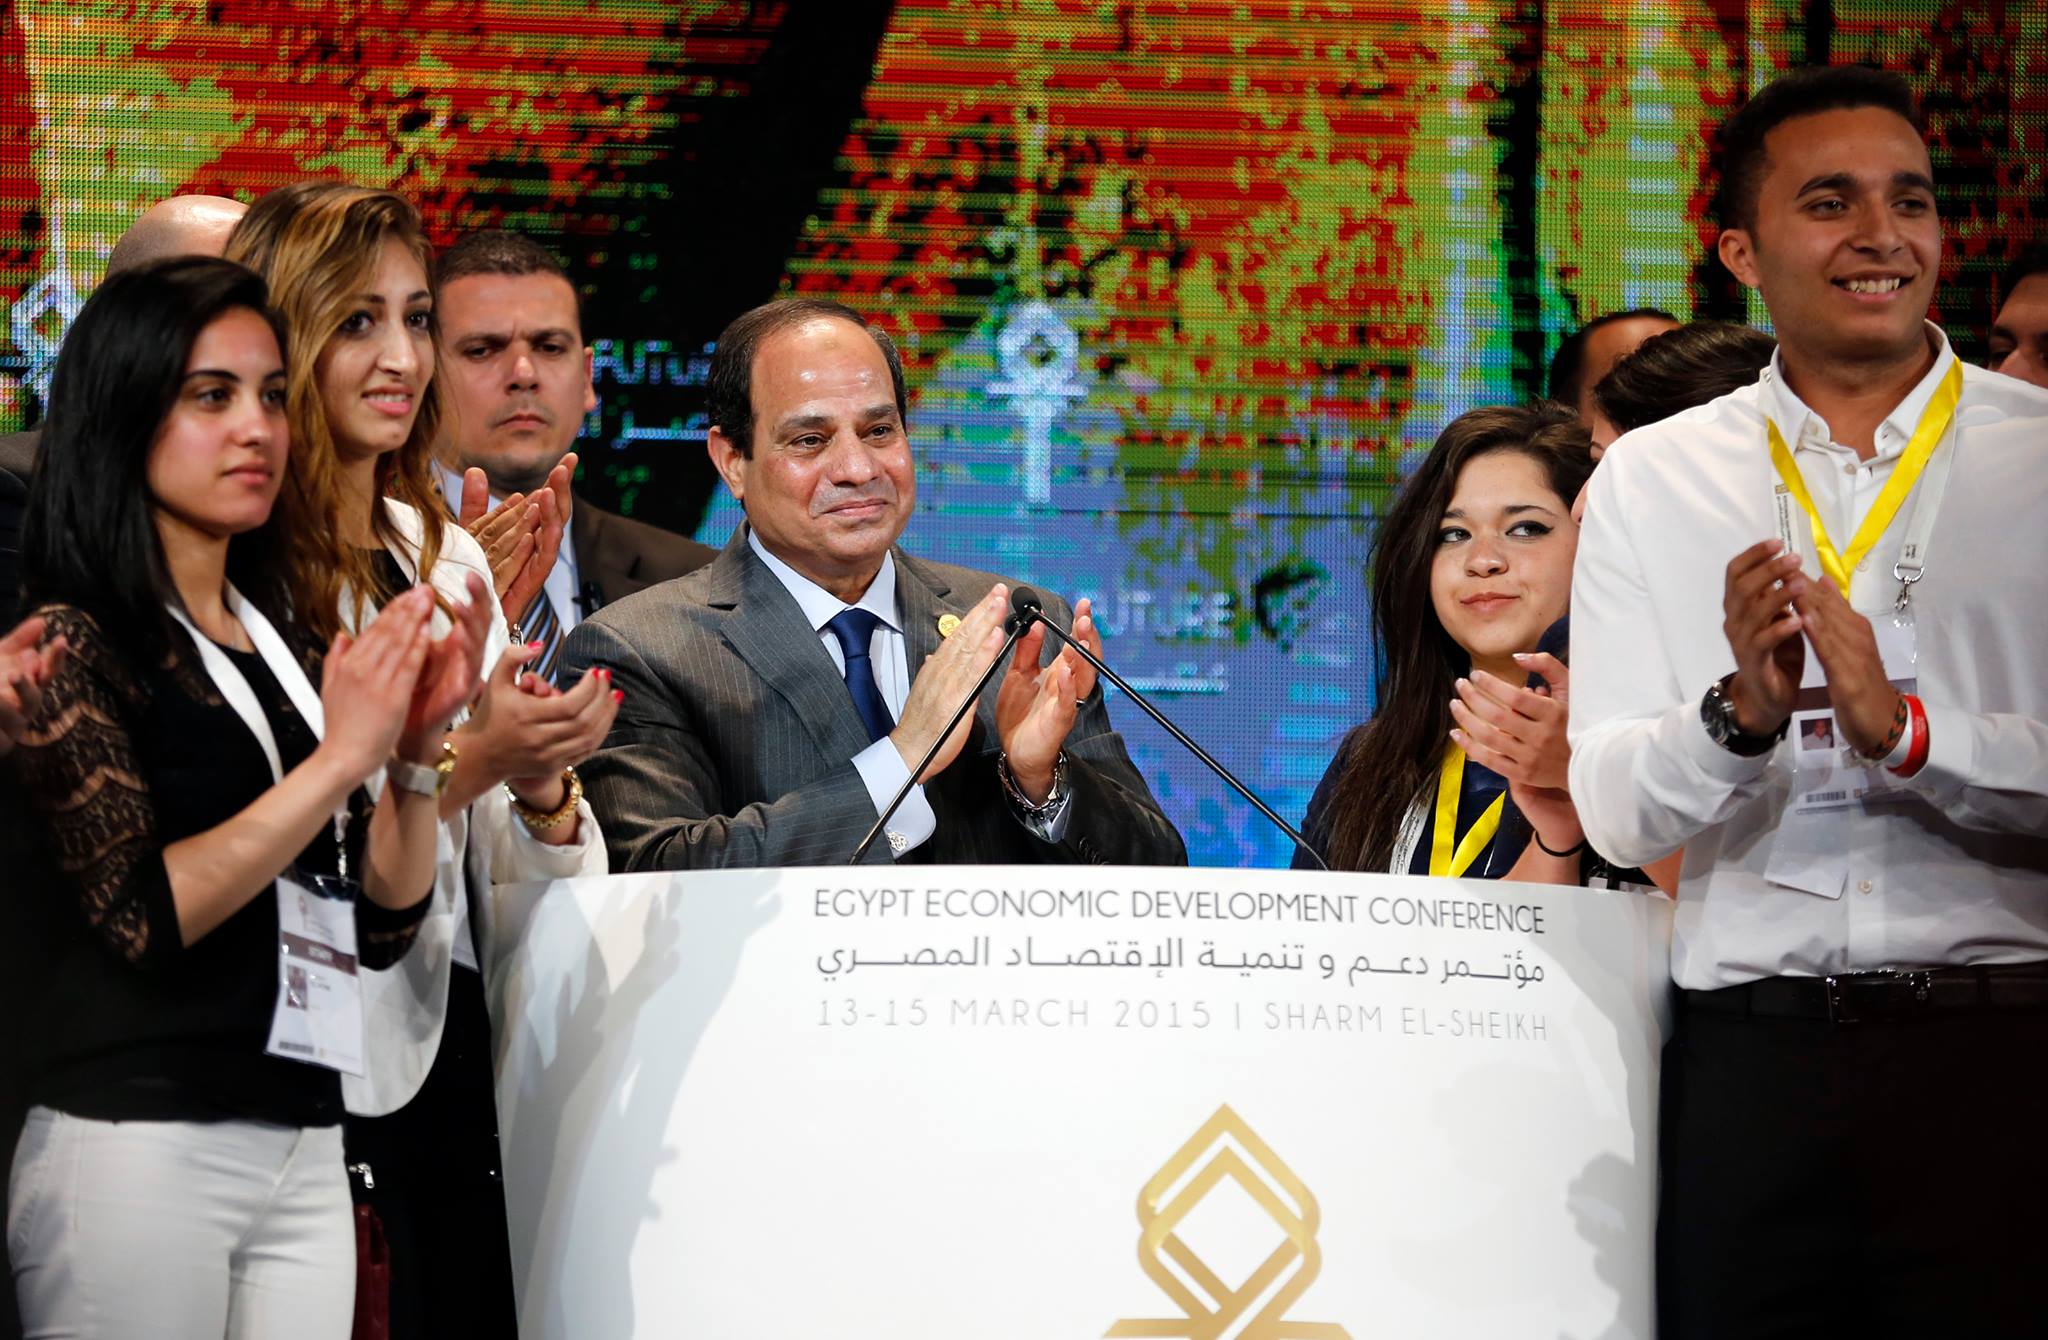 المجلس الوطني للتنافسية يتوقع تحسن تصنيف مصر عالميا في 2015 بعد تدهوره 5 أعوام